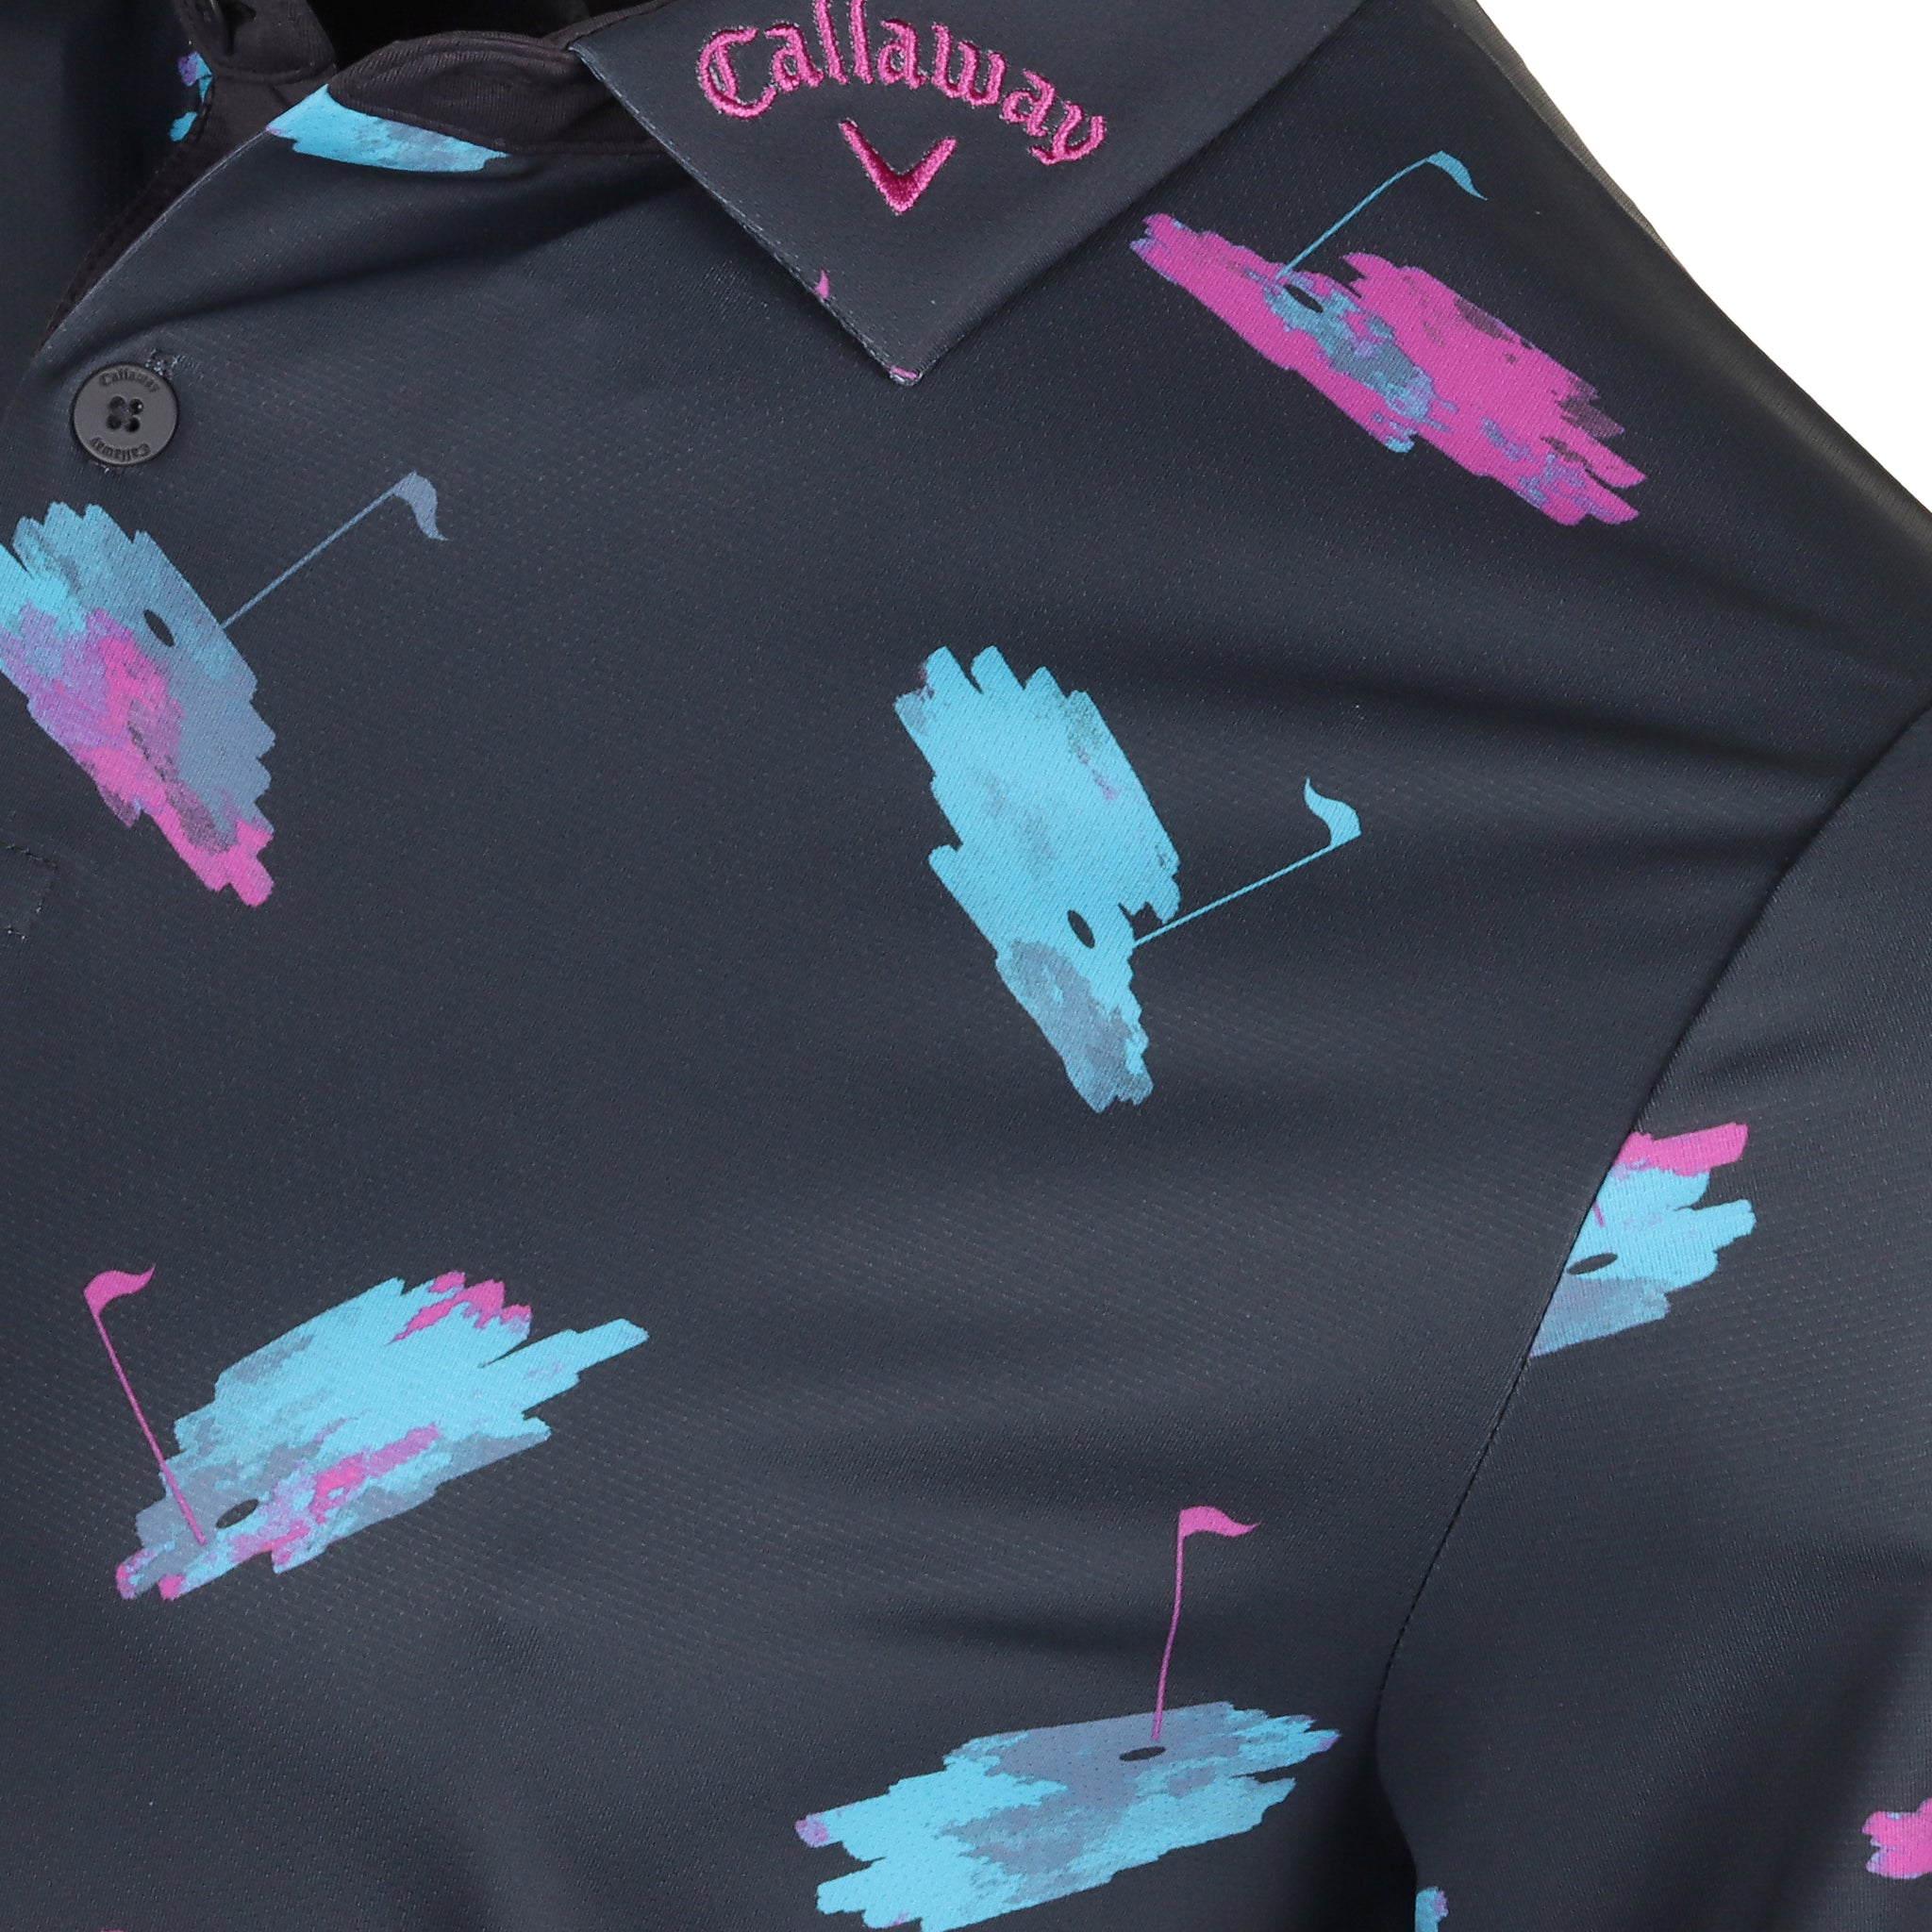 Callaway Golf Novelty Print Shirt